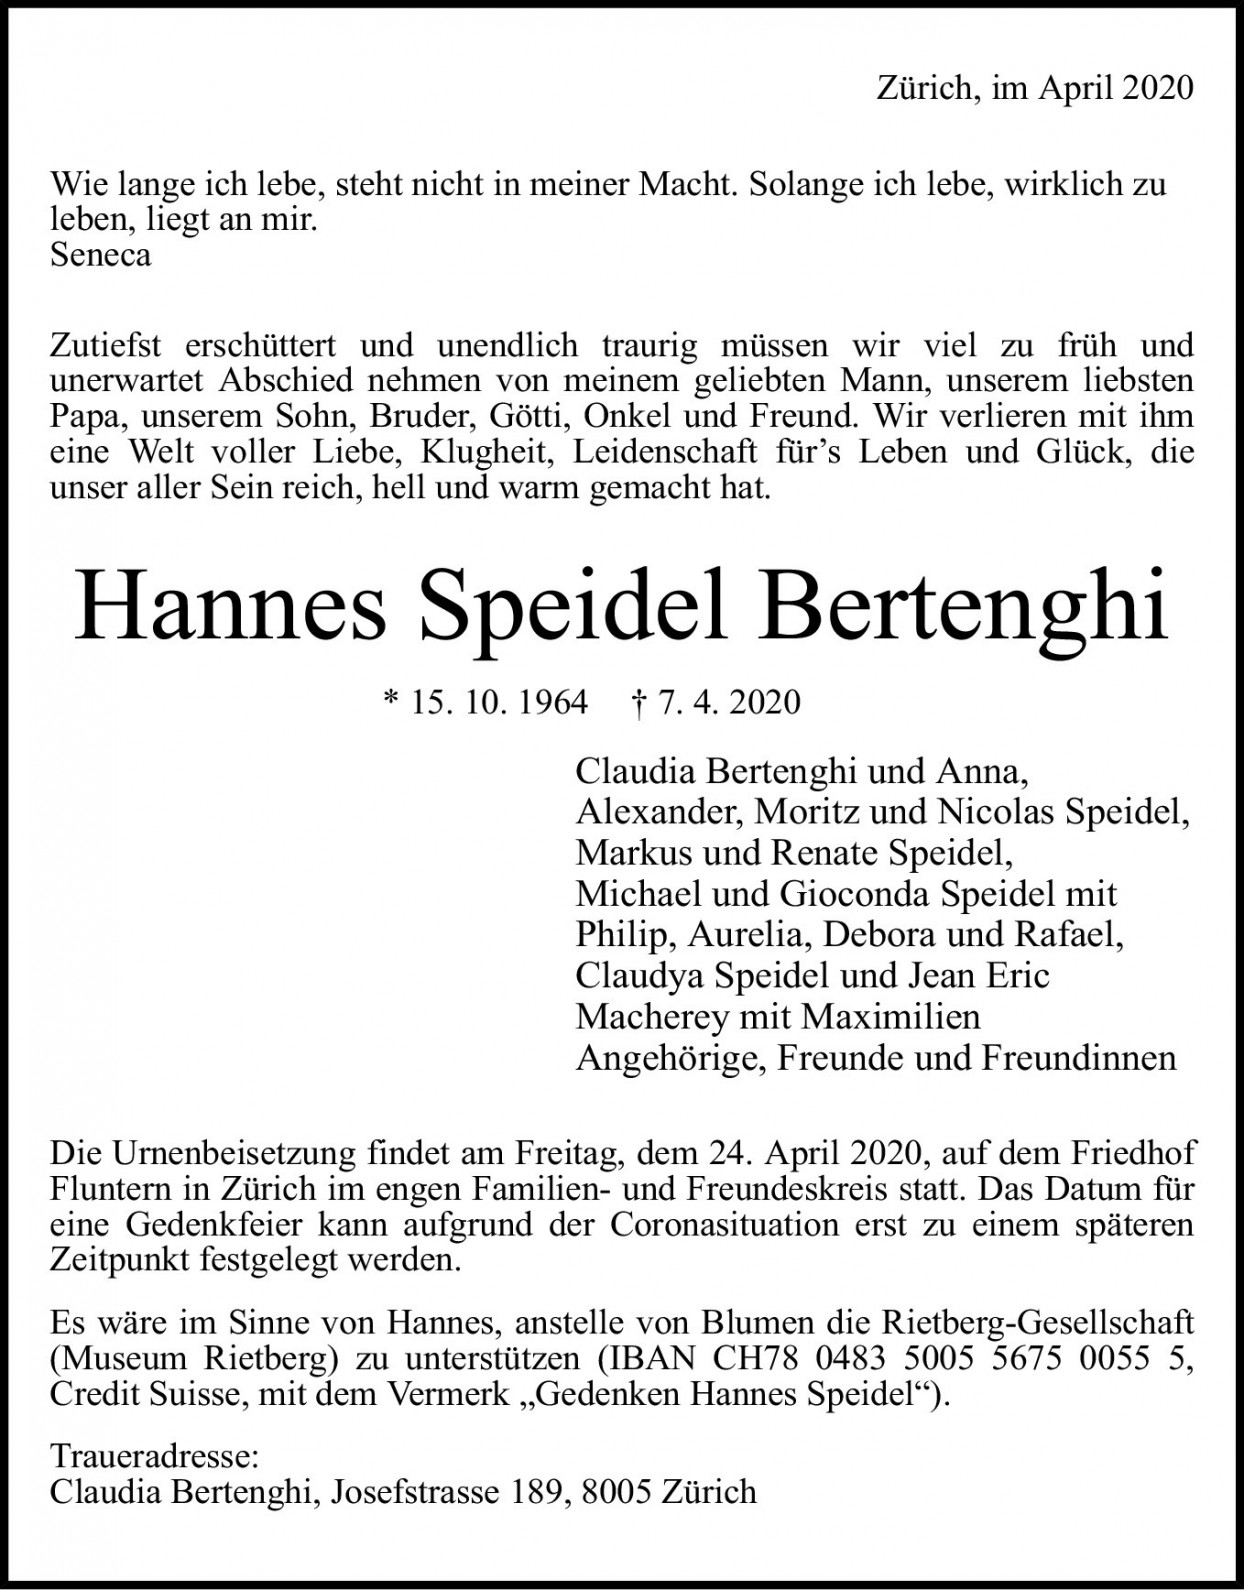 Hannes Speidel-Bertenghi